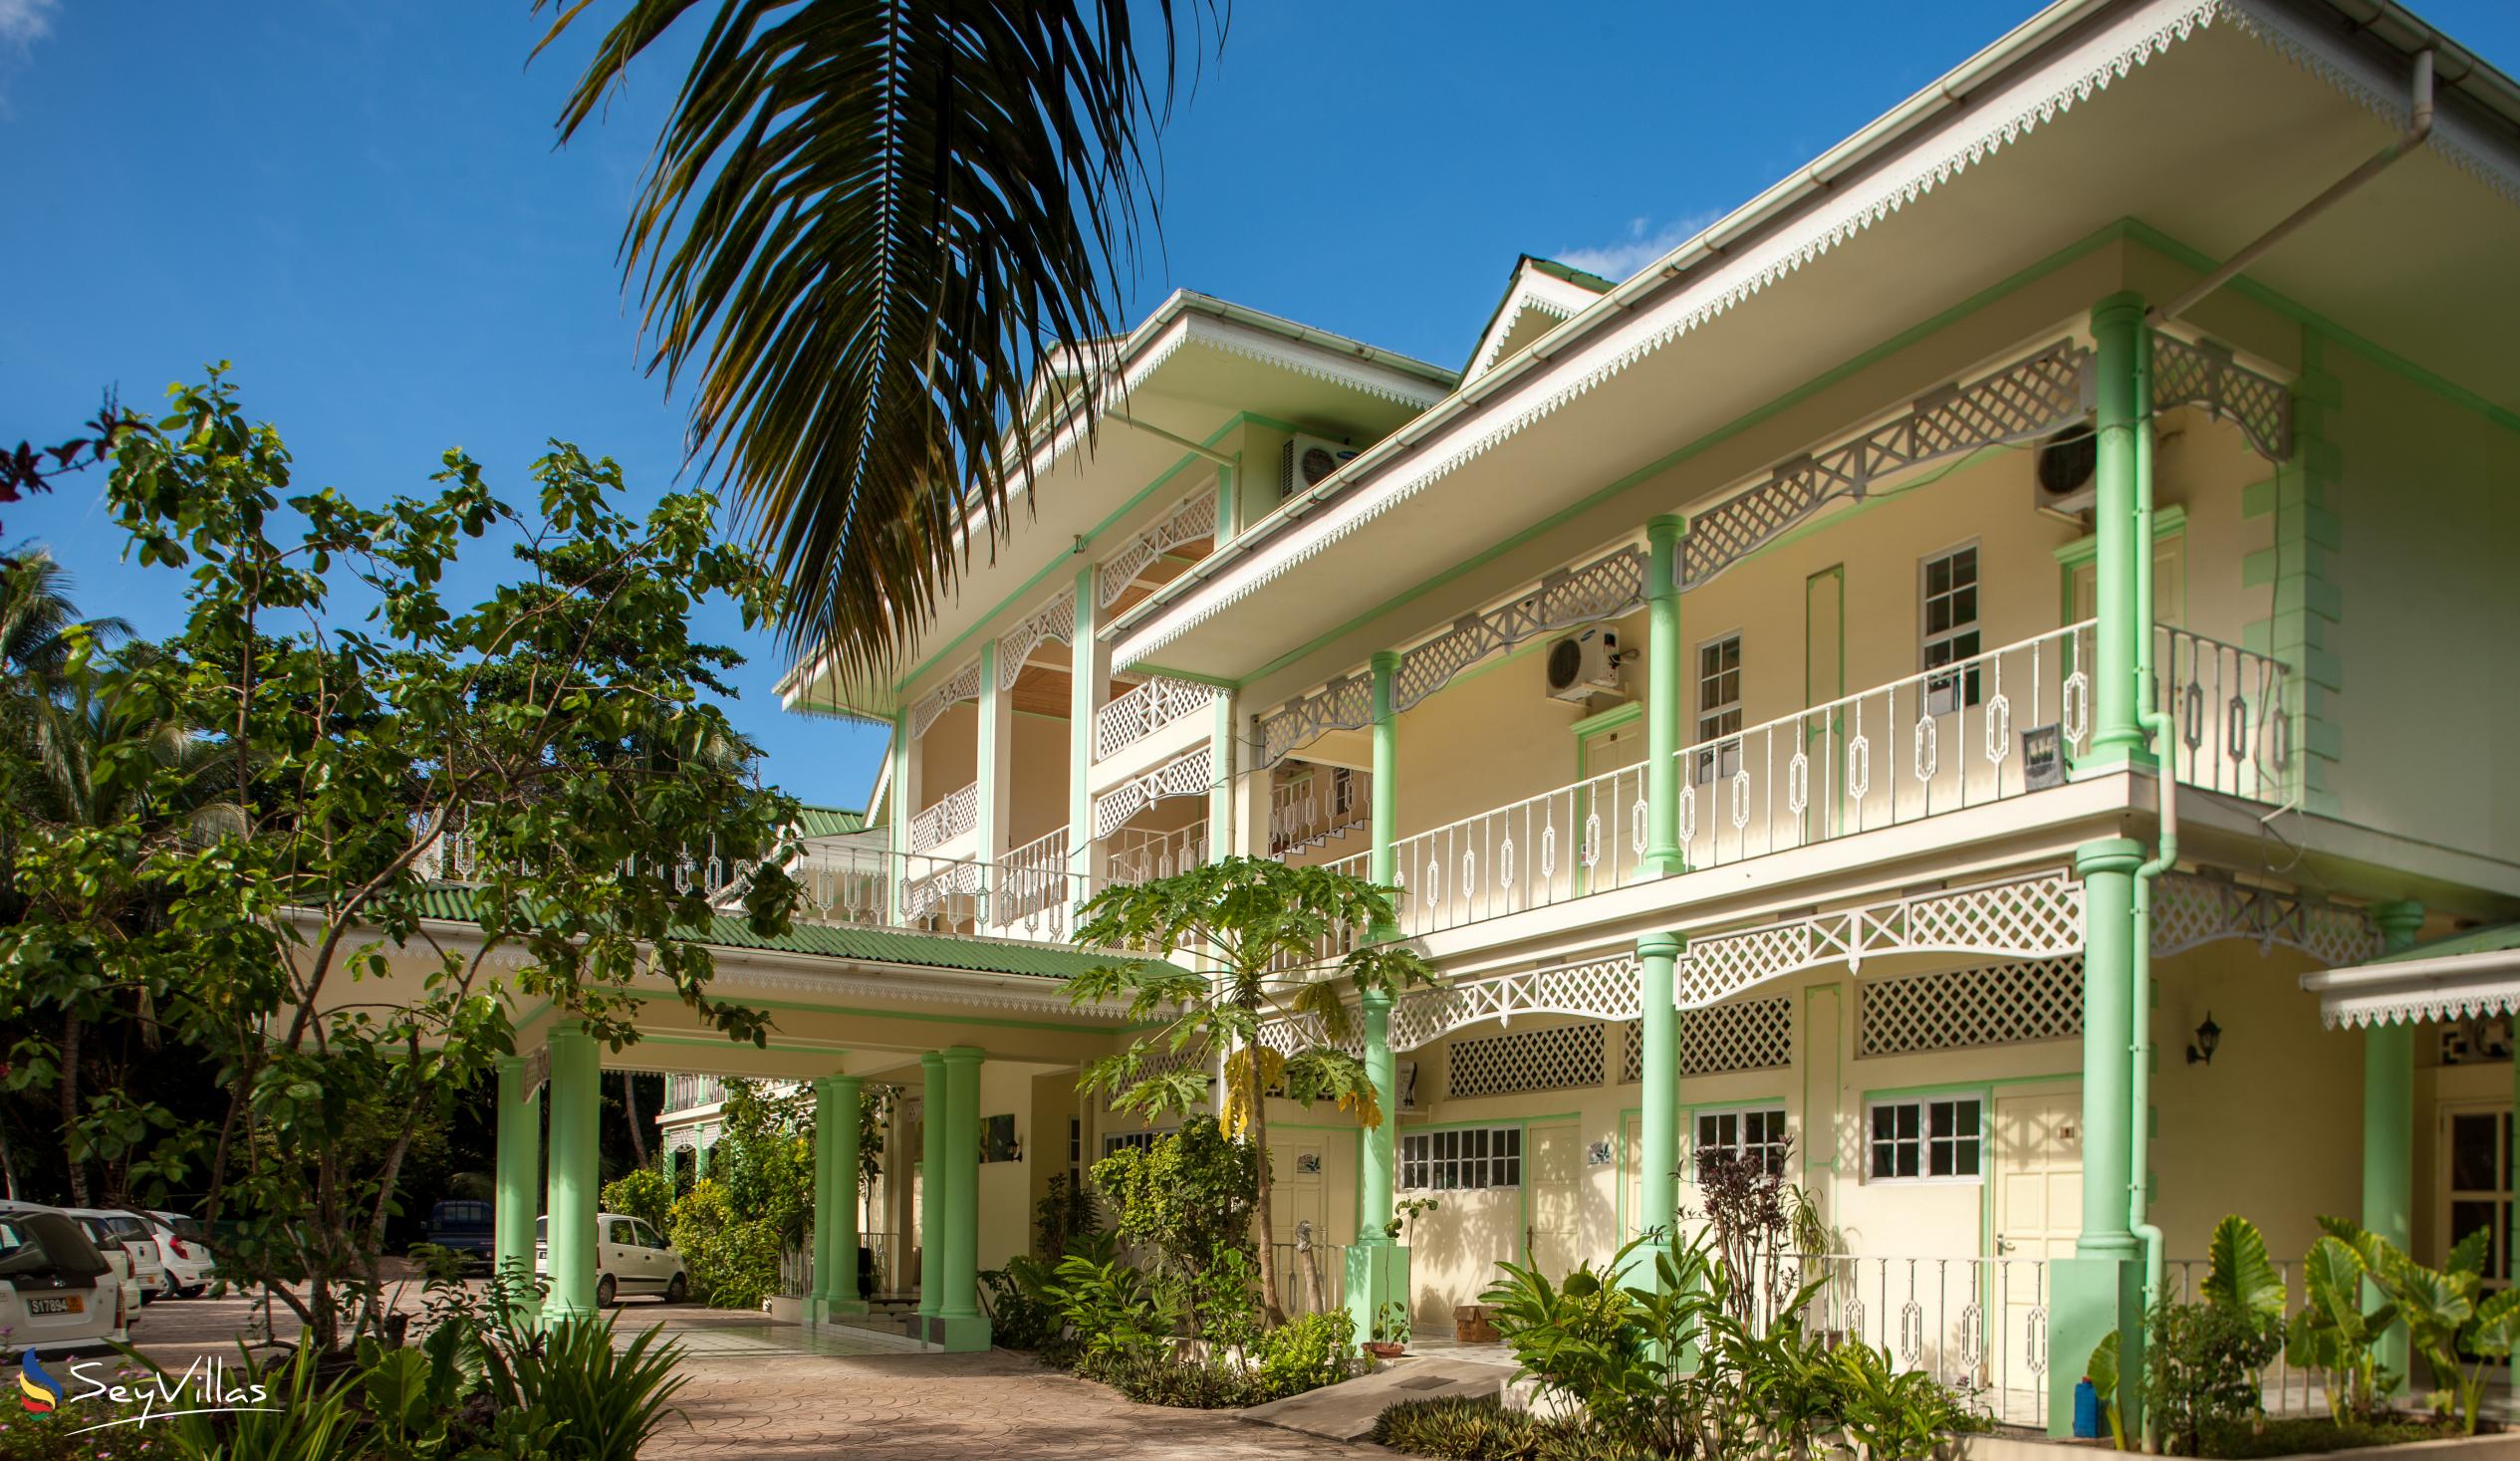 Foto 3: Palm Beach Hotel - Aussenbereich - Praslin (Seychellen)